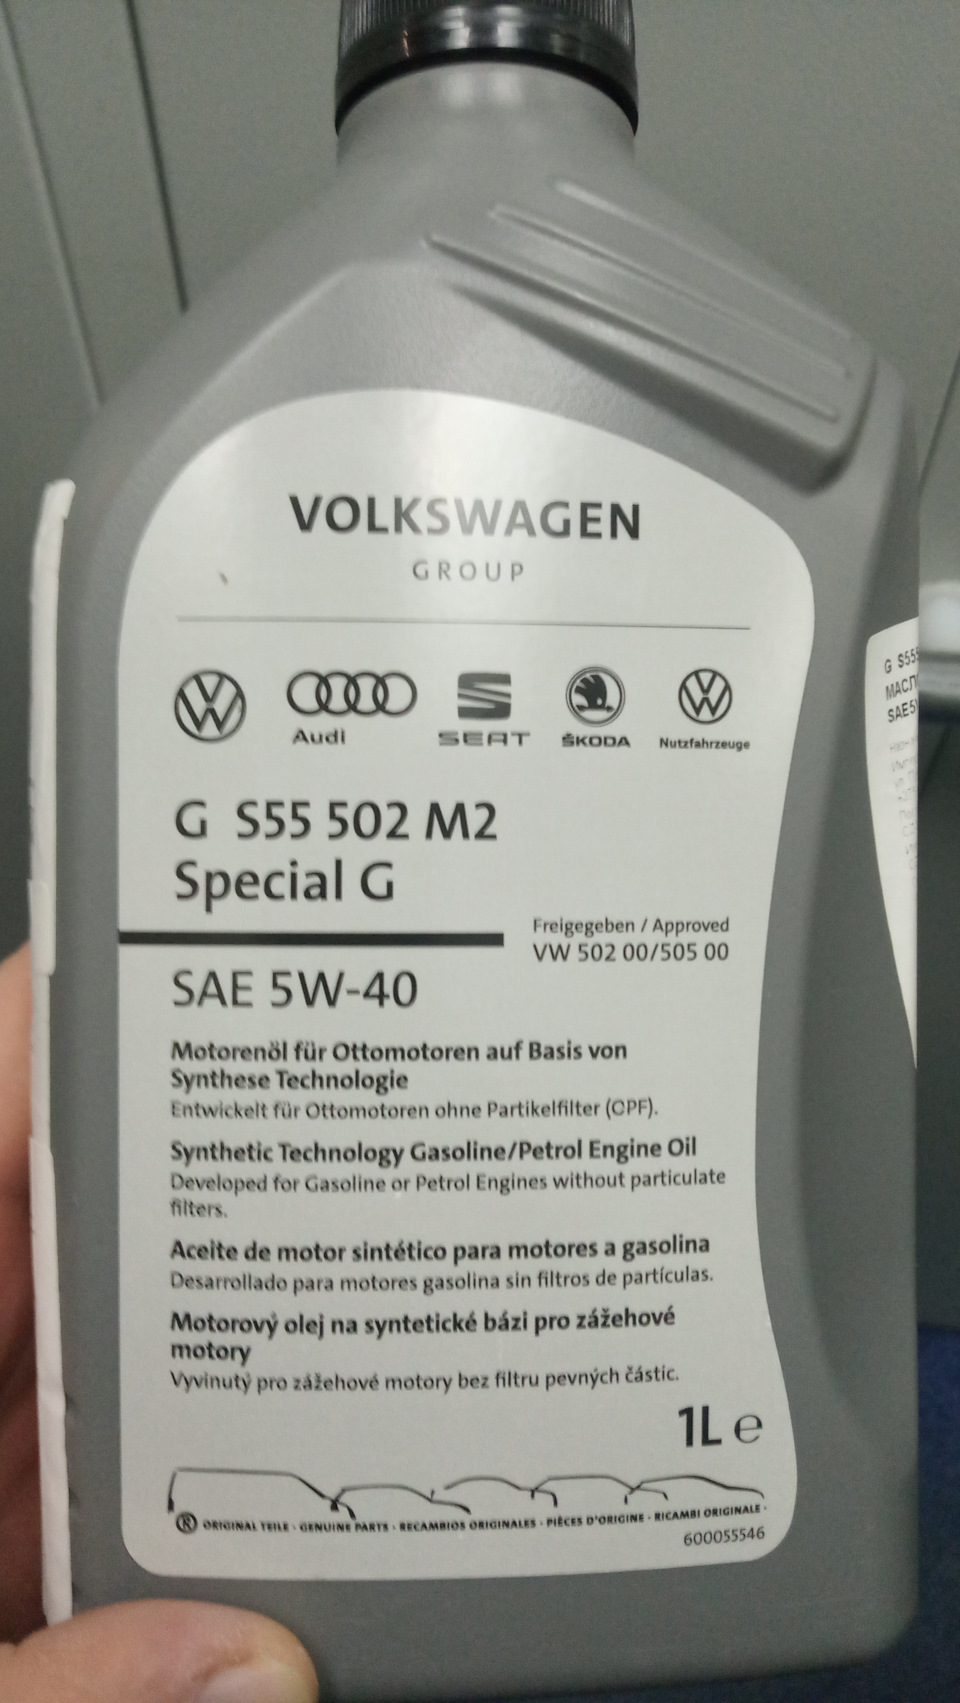 Vw 502 00 масло. VAG gs55502m2eur. Gs55502m4. VW 502. VW Special g 5w40 gs55502m4eur.